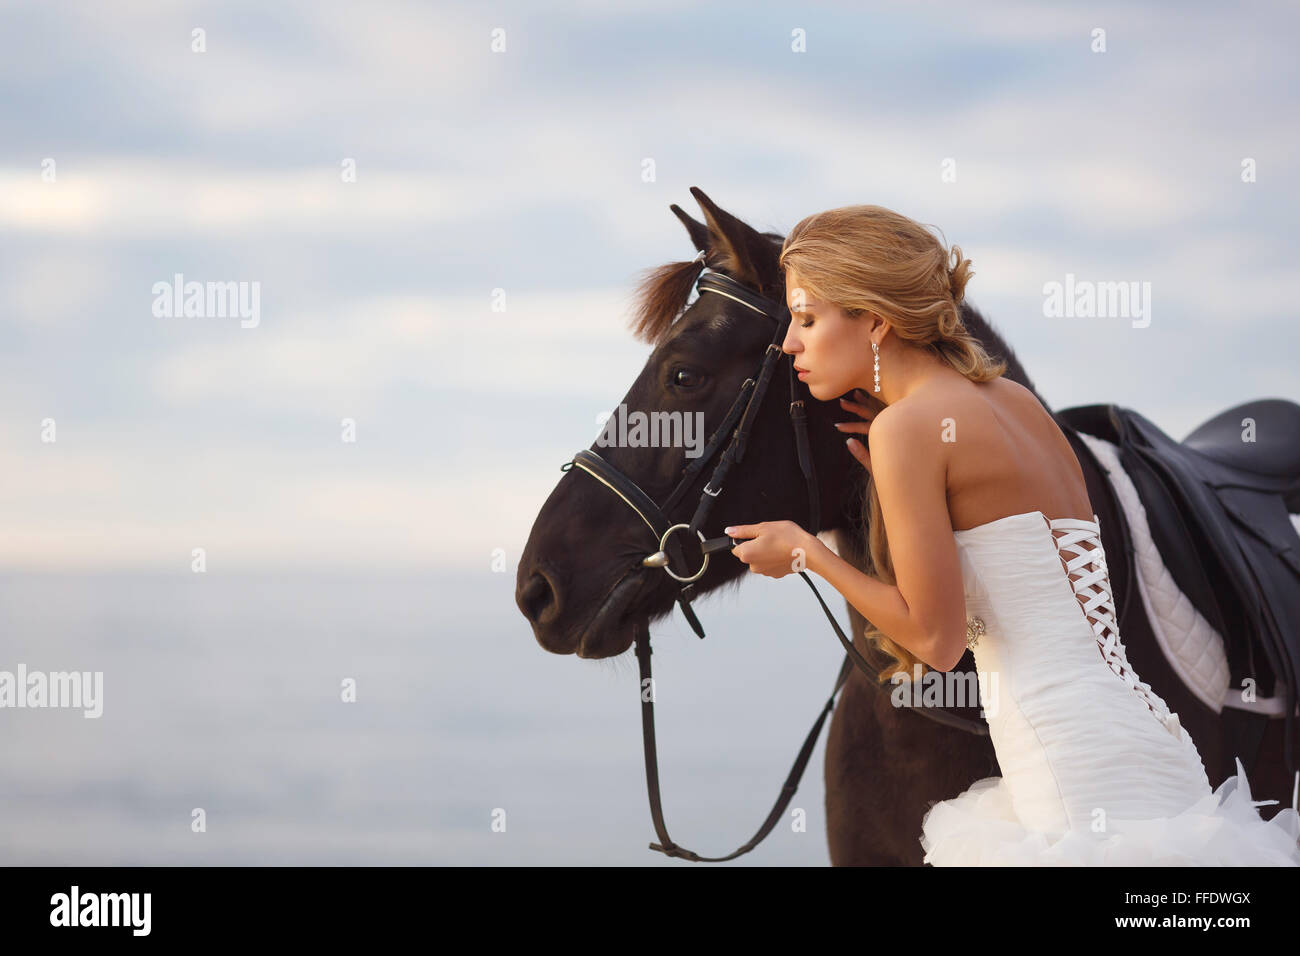 Sposa con un cavallo di mare nel loro giorno di nozze Foto Stock